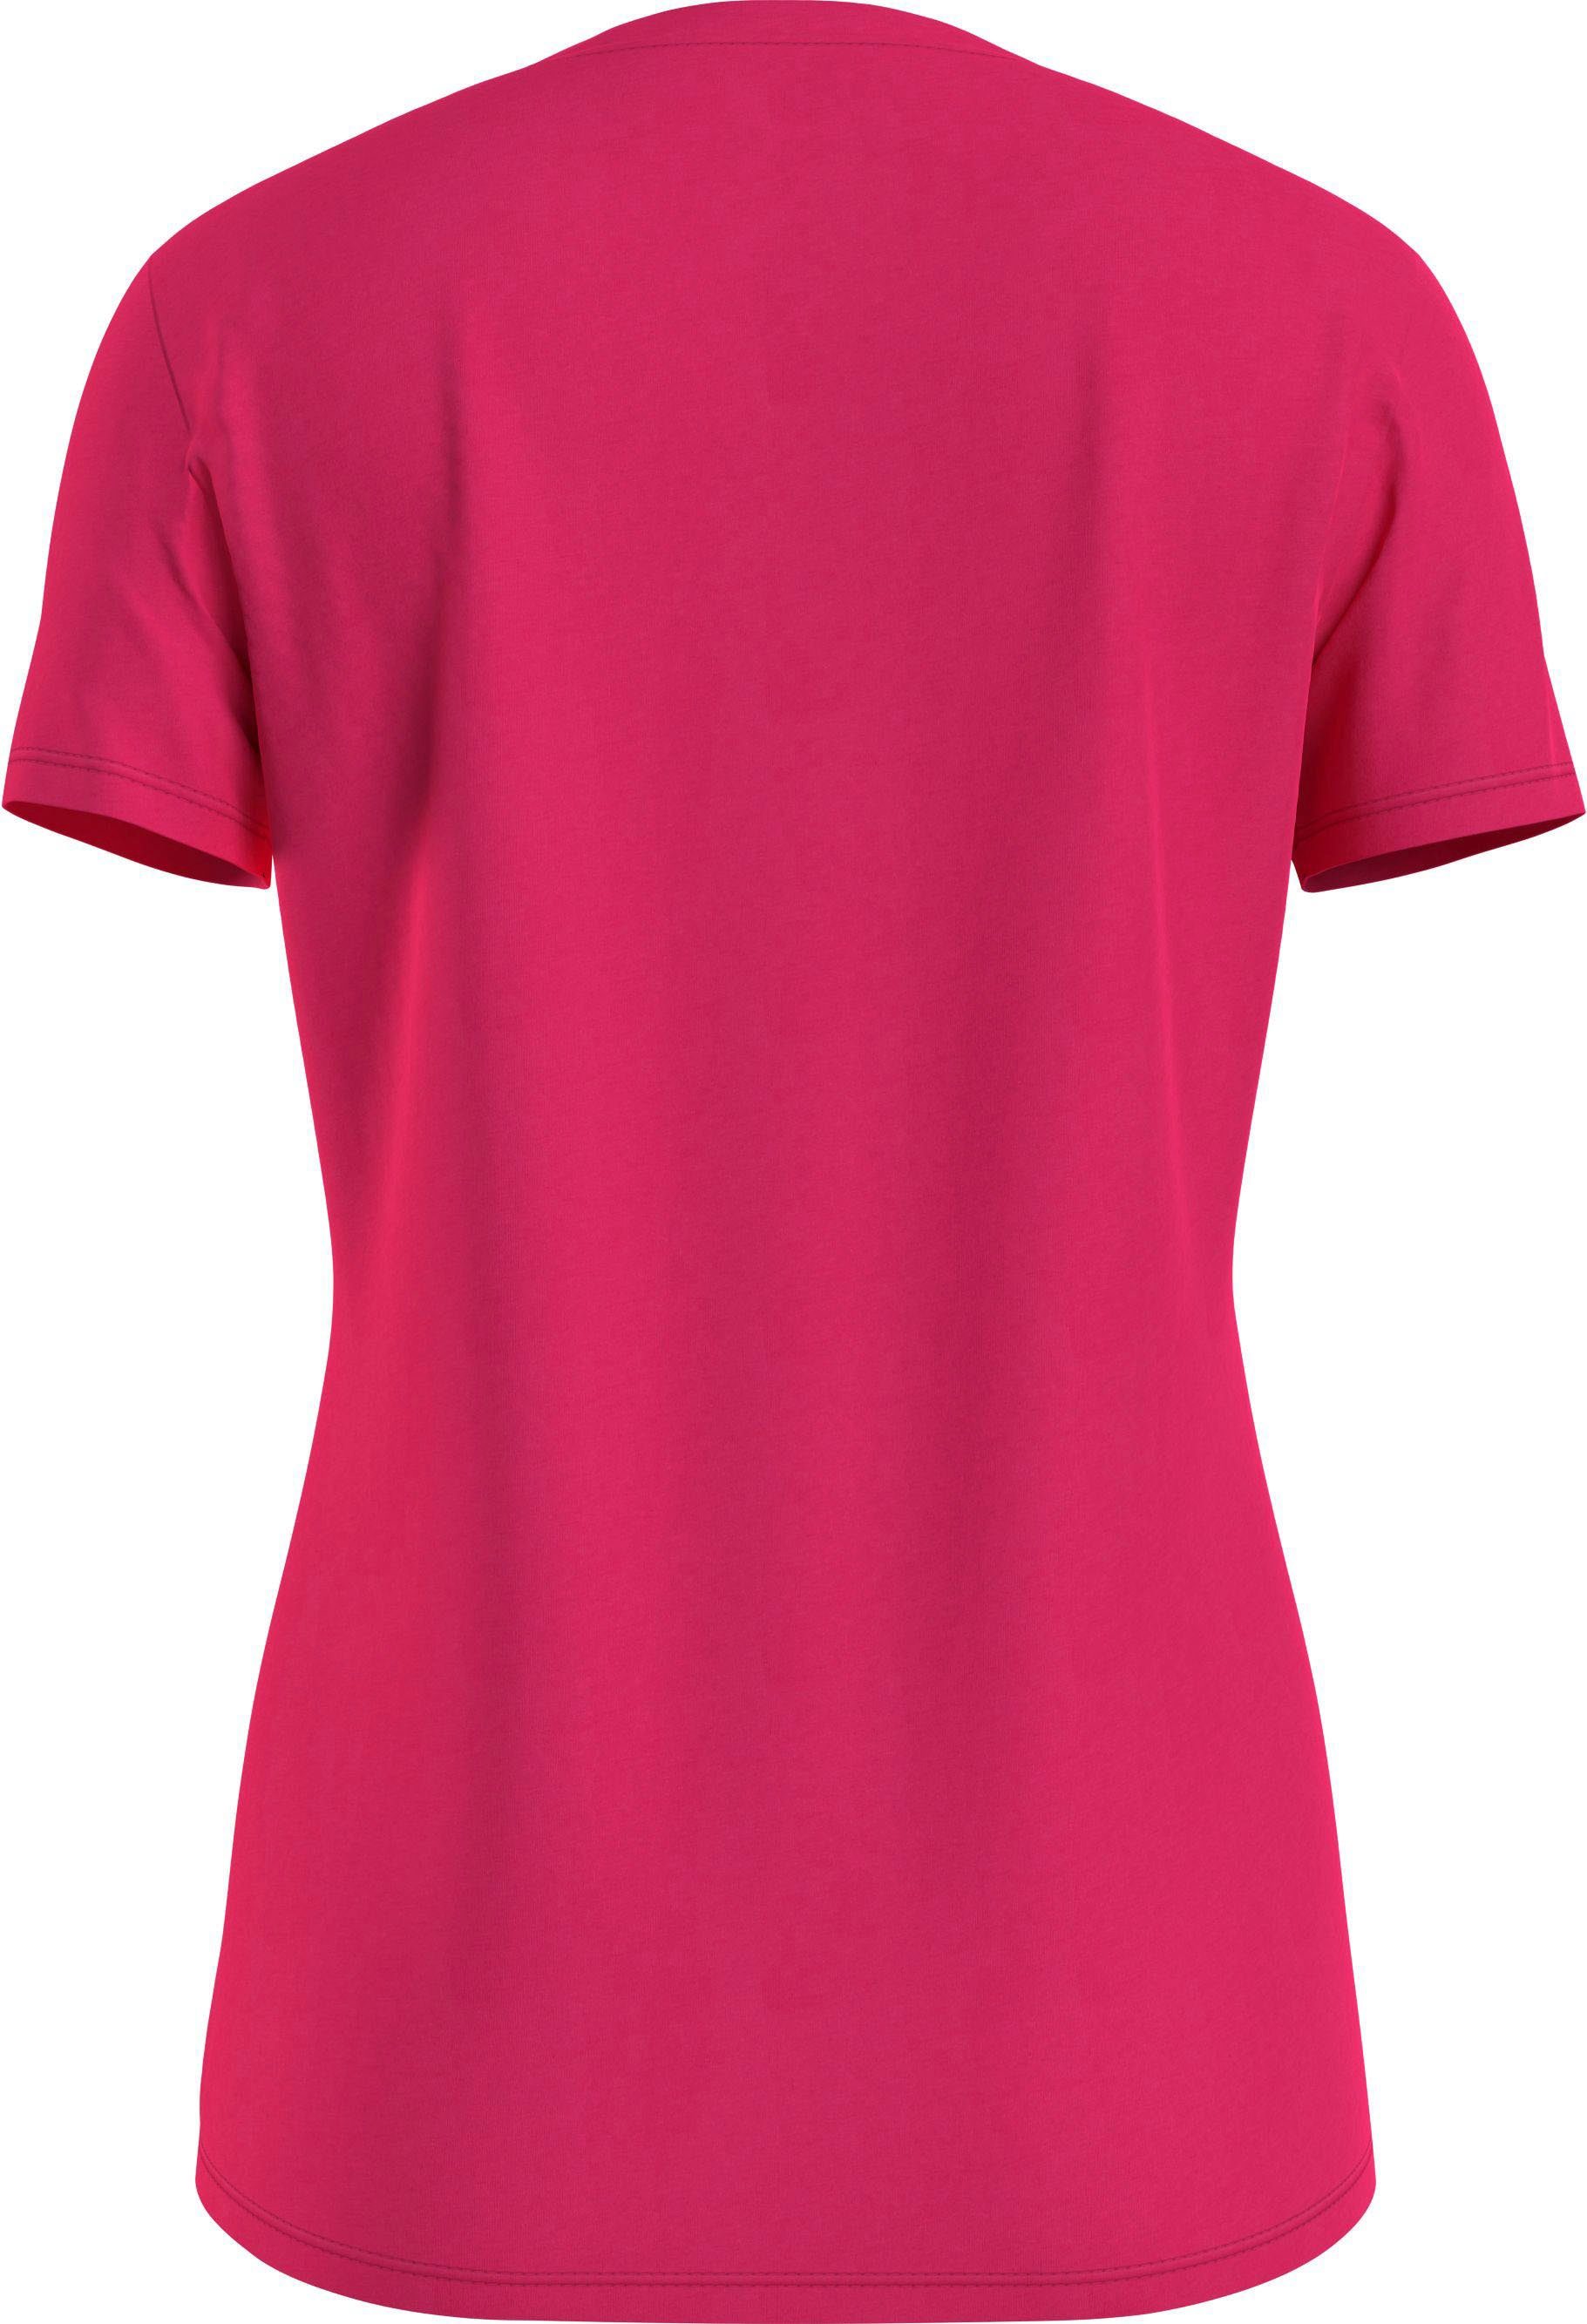 Tommy TEE NECK Markenlabel Hilfiger Pink-Splendor T-Shirt NEW mit CREW Tommy Hilfiger